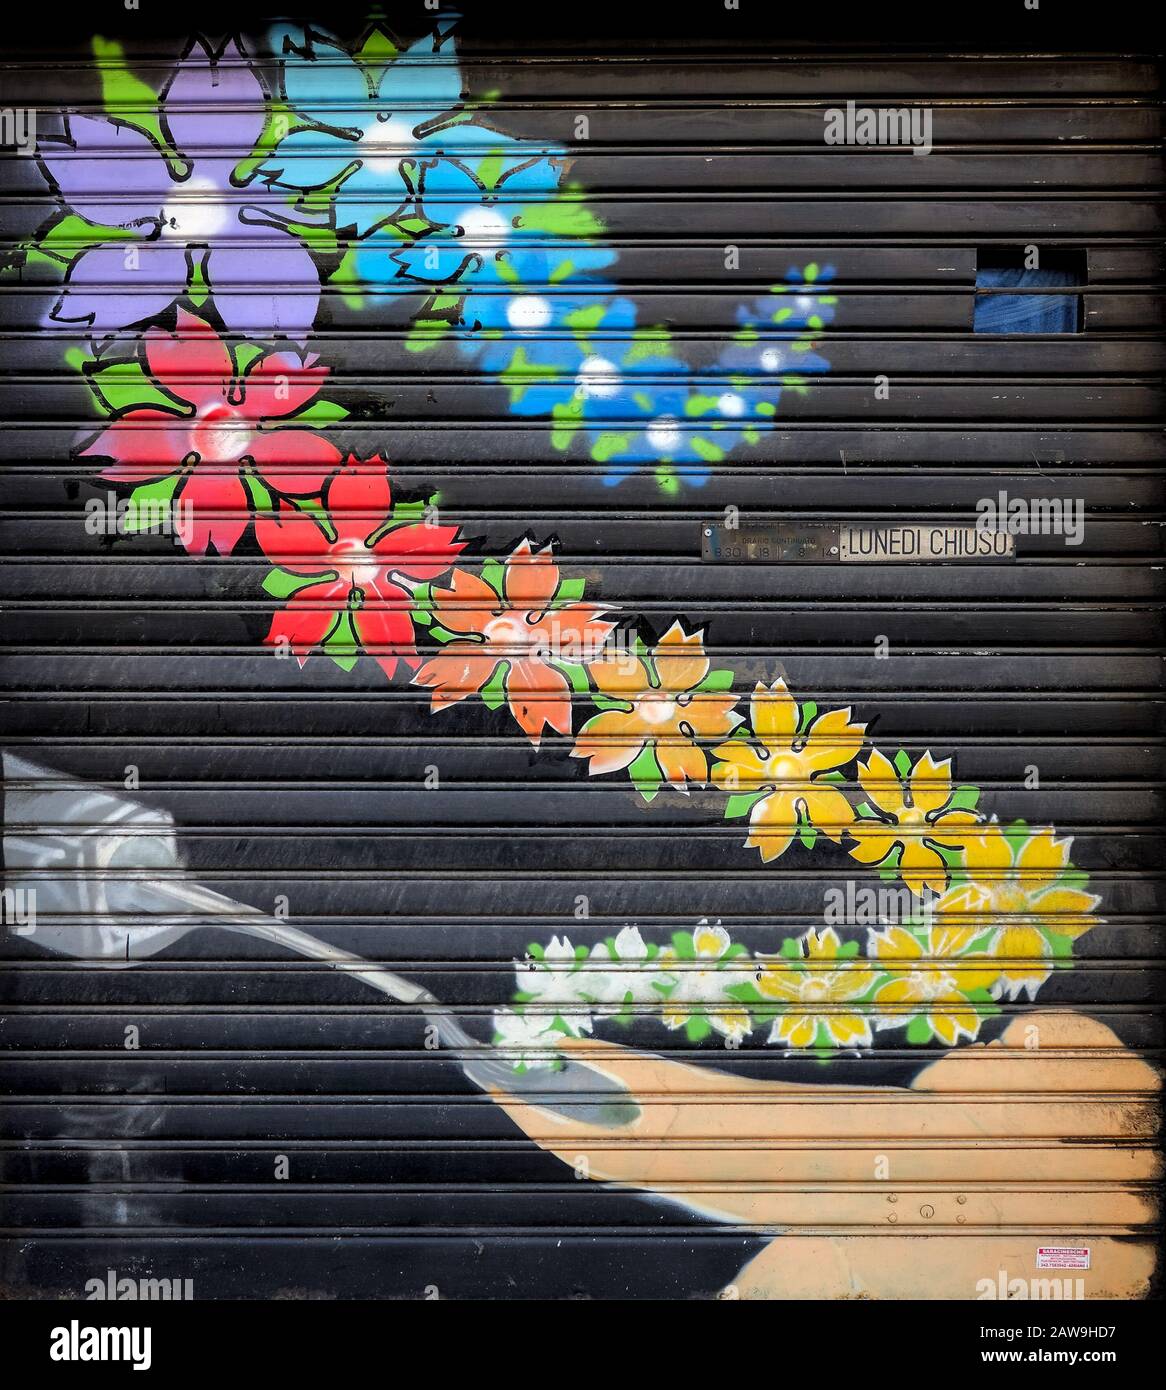 Dipinto a mano sull'otturatore di un negozio nella periferia meridionale di Milano, in Italia, raffigurante una treccia in aumento di fiori colorati Foto Stock